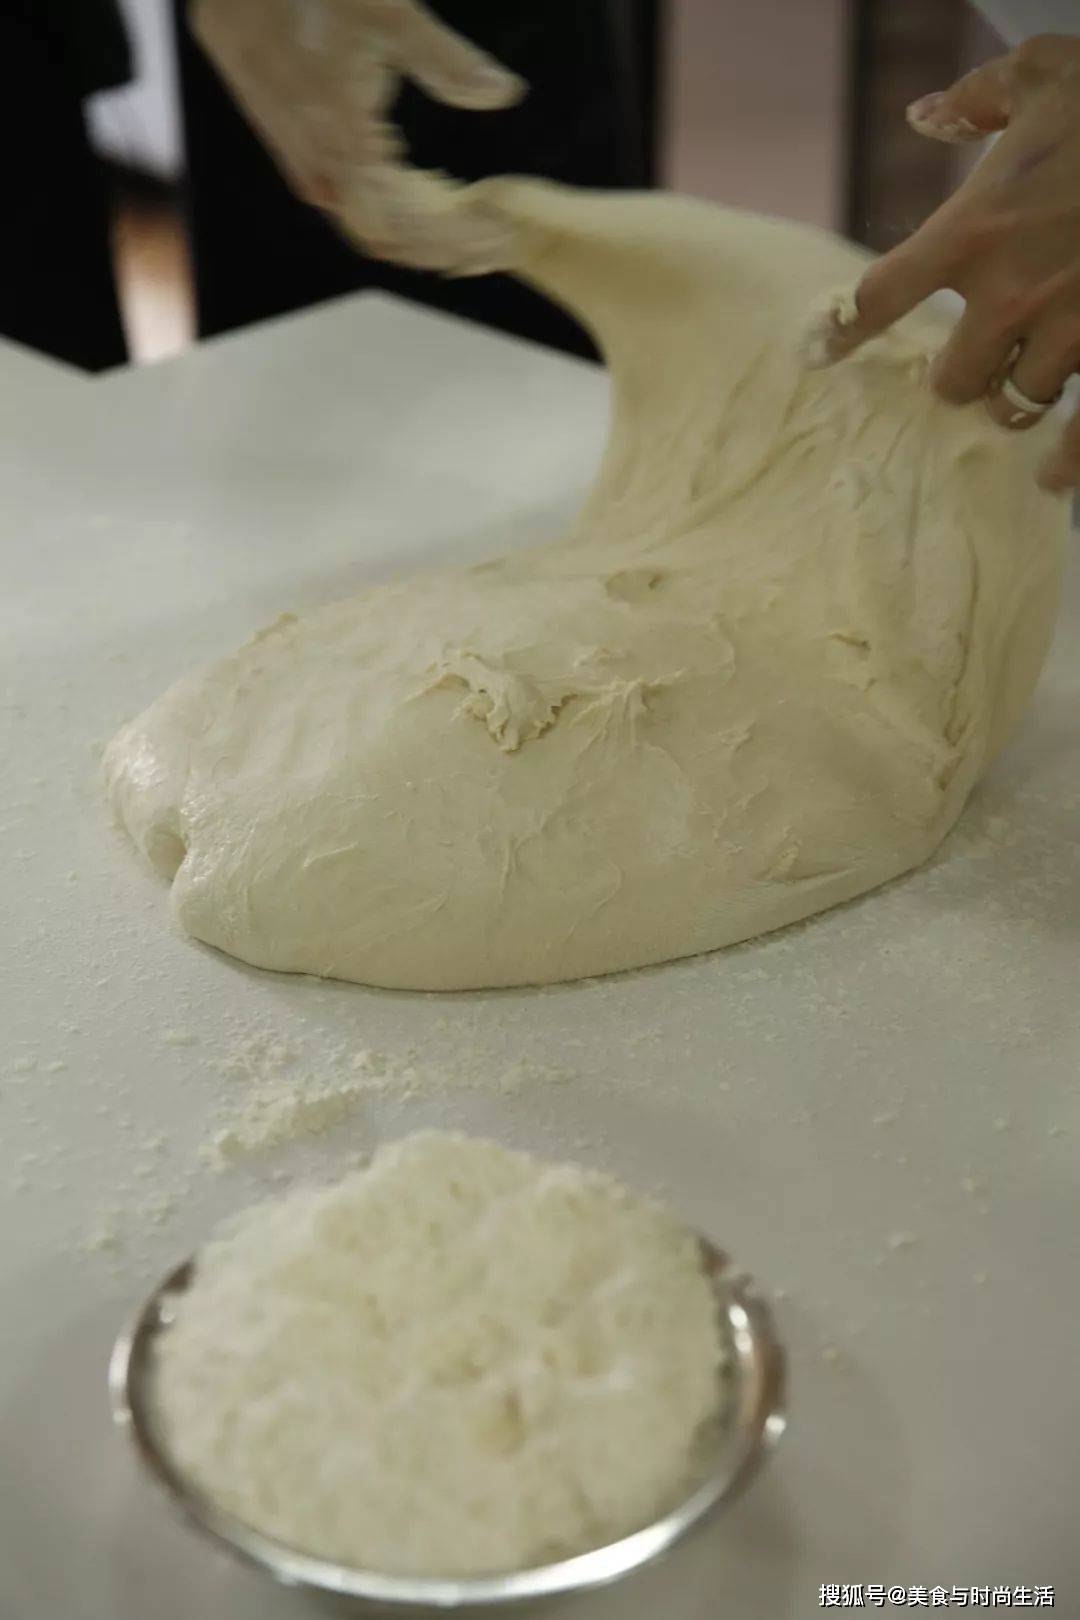 再厉害的烘焙高手都需要,面包各种发酵技巧合集!